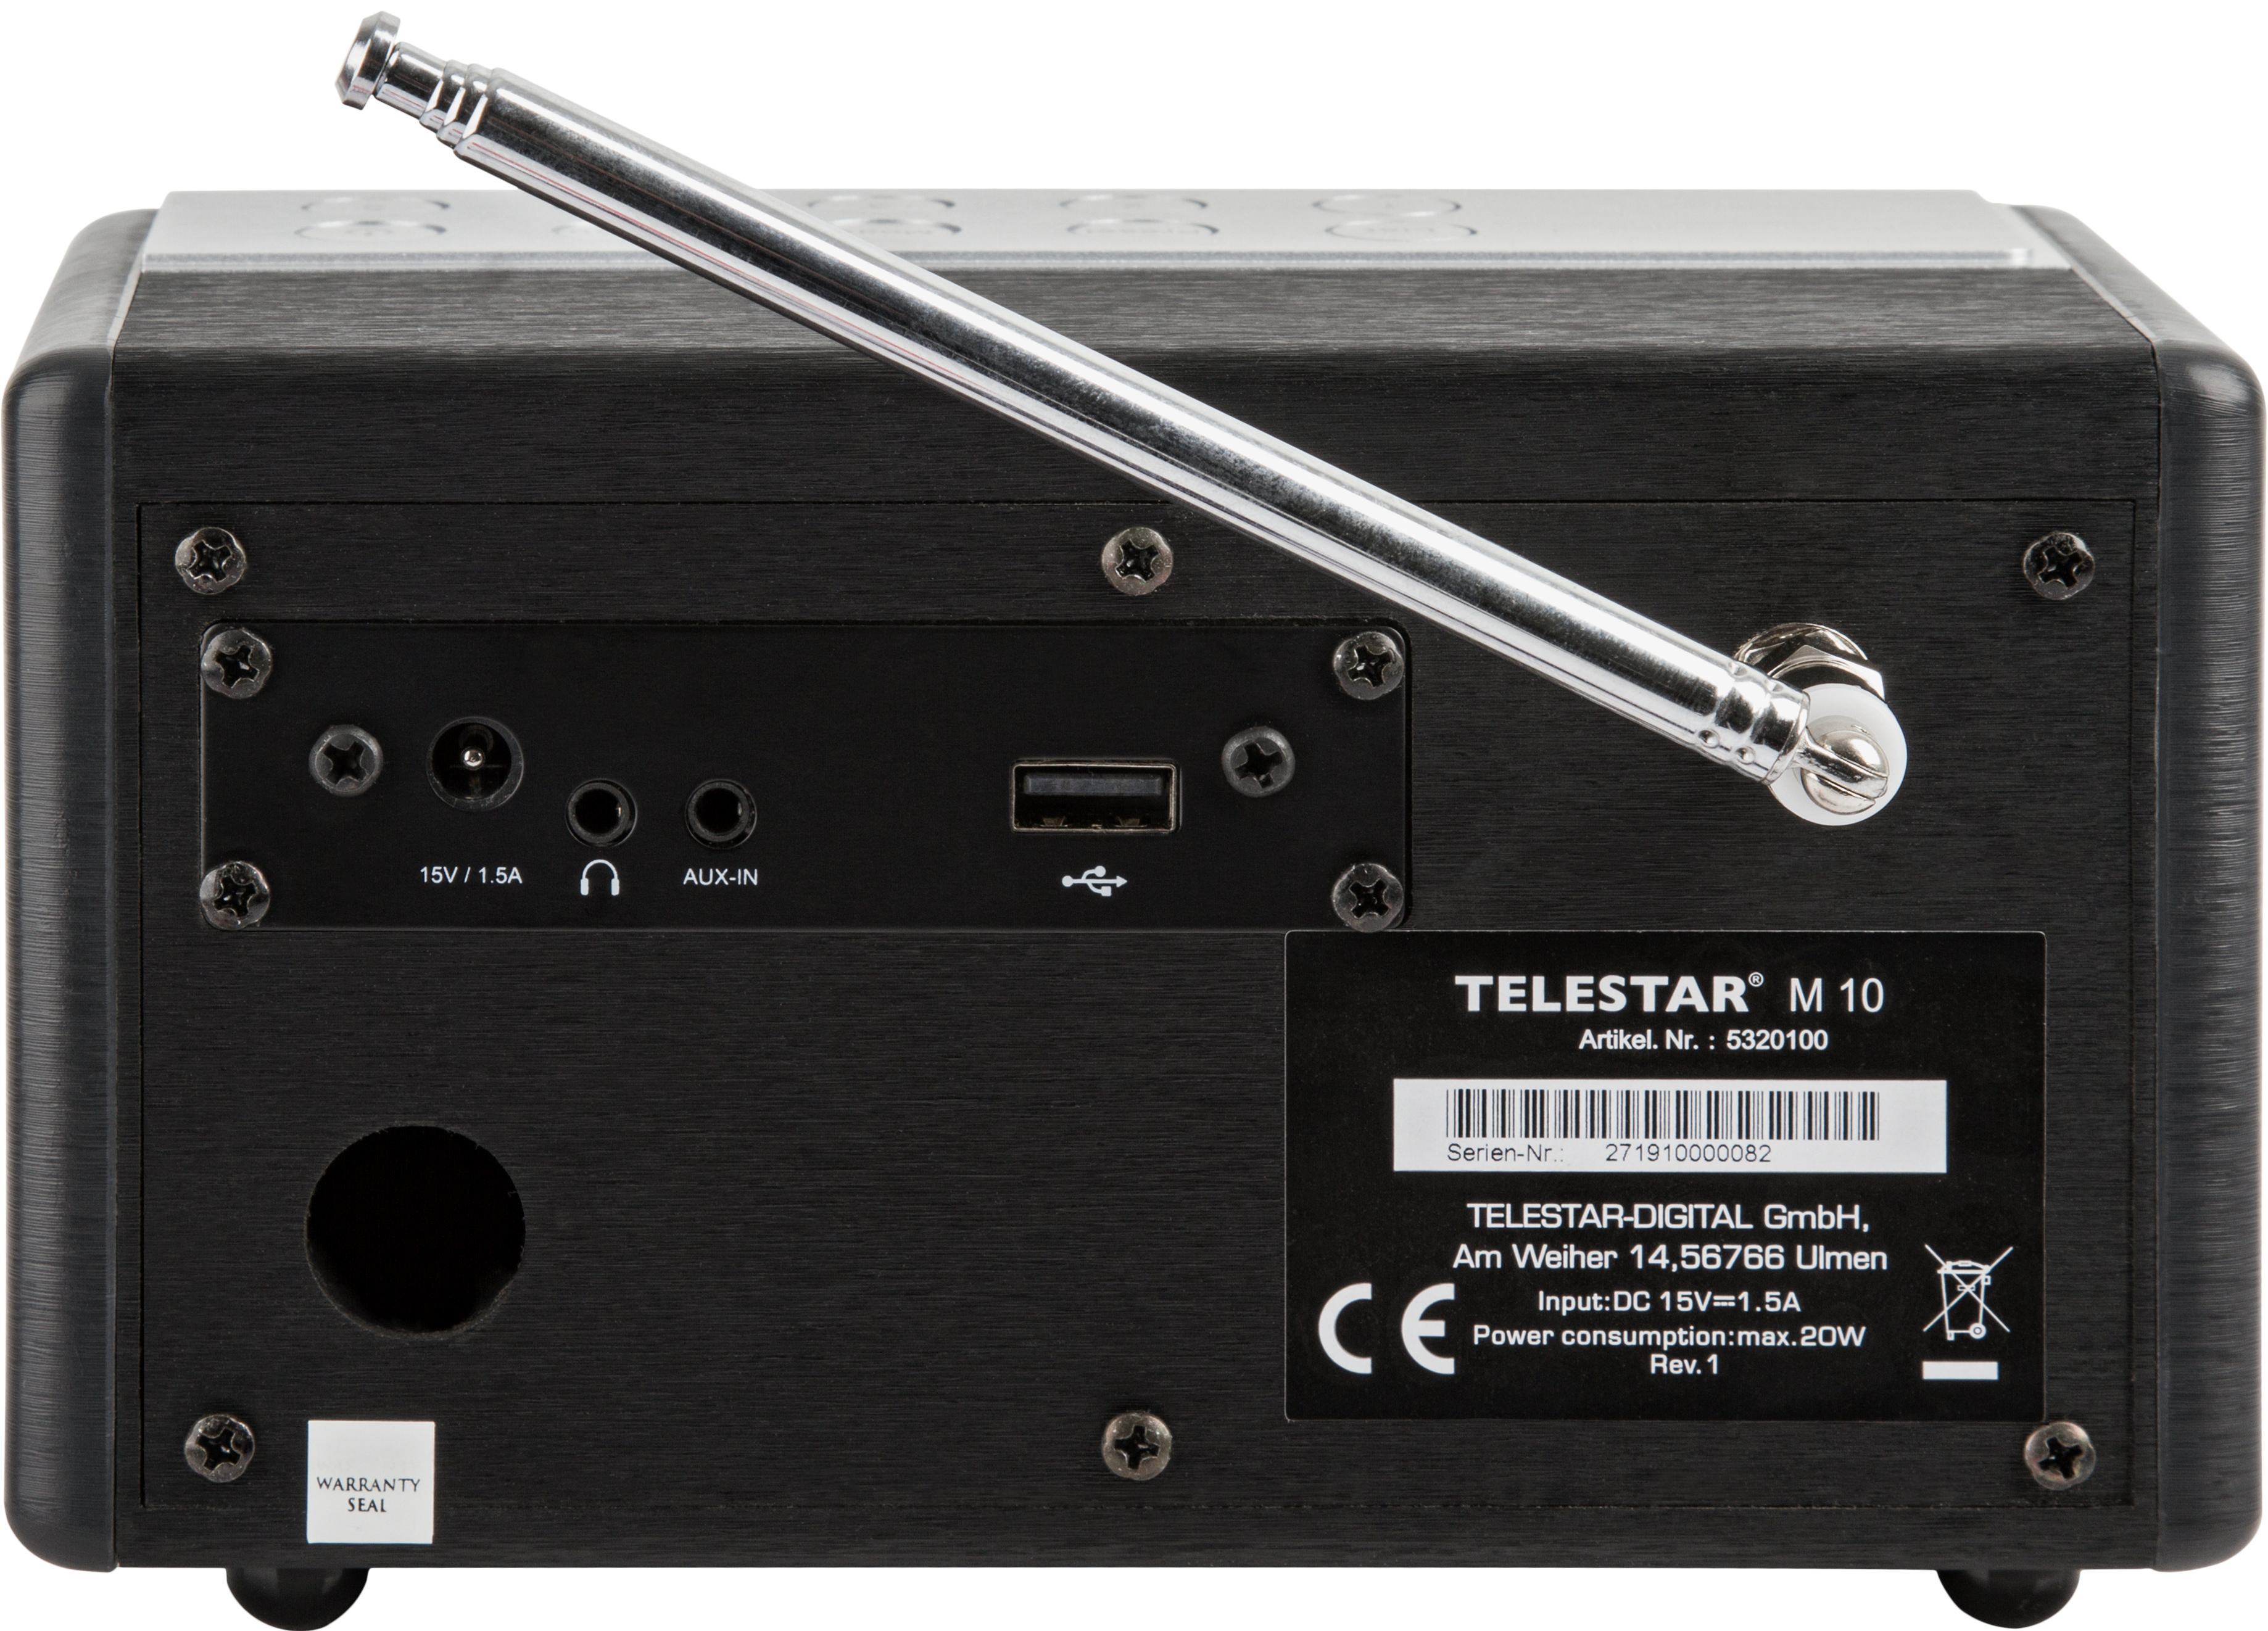 TELESTAR M10 DAB+ Radio, digital, DAB+, DAB, FM, Schwarz/Silber